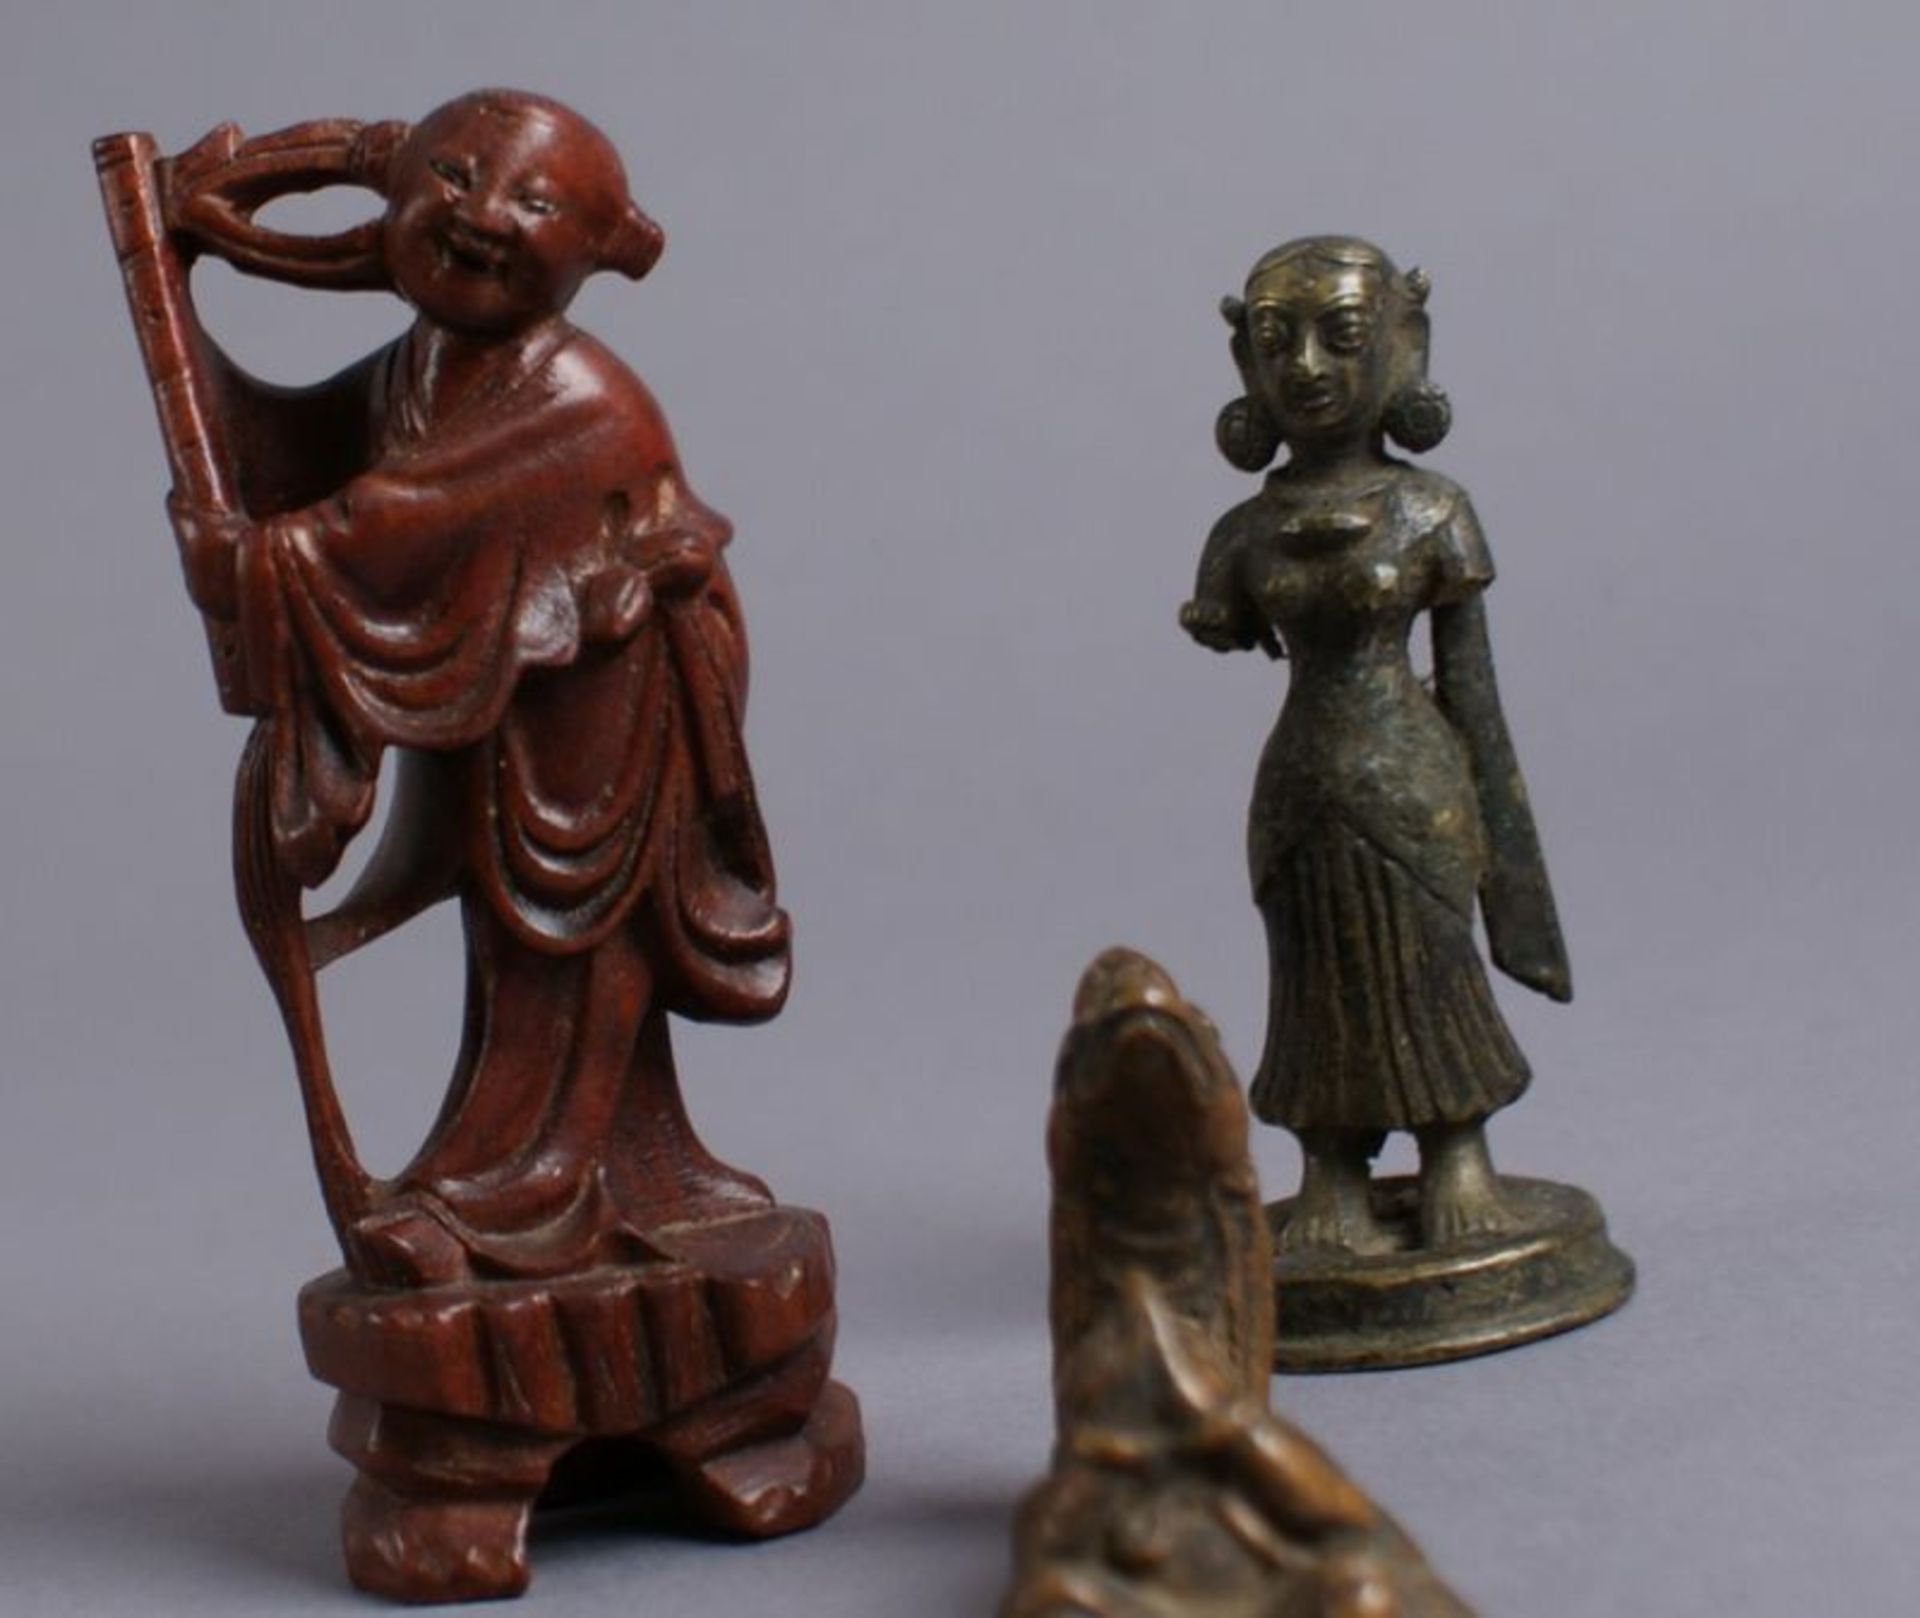 KONVOLUT ASIATISCHE SKULPTUREN 19. JH, aus Holz und Bronze gearbeitete Figuren, H 6,5, 8,5, 10,5 - Bild 2 aus 5